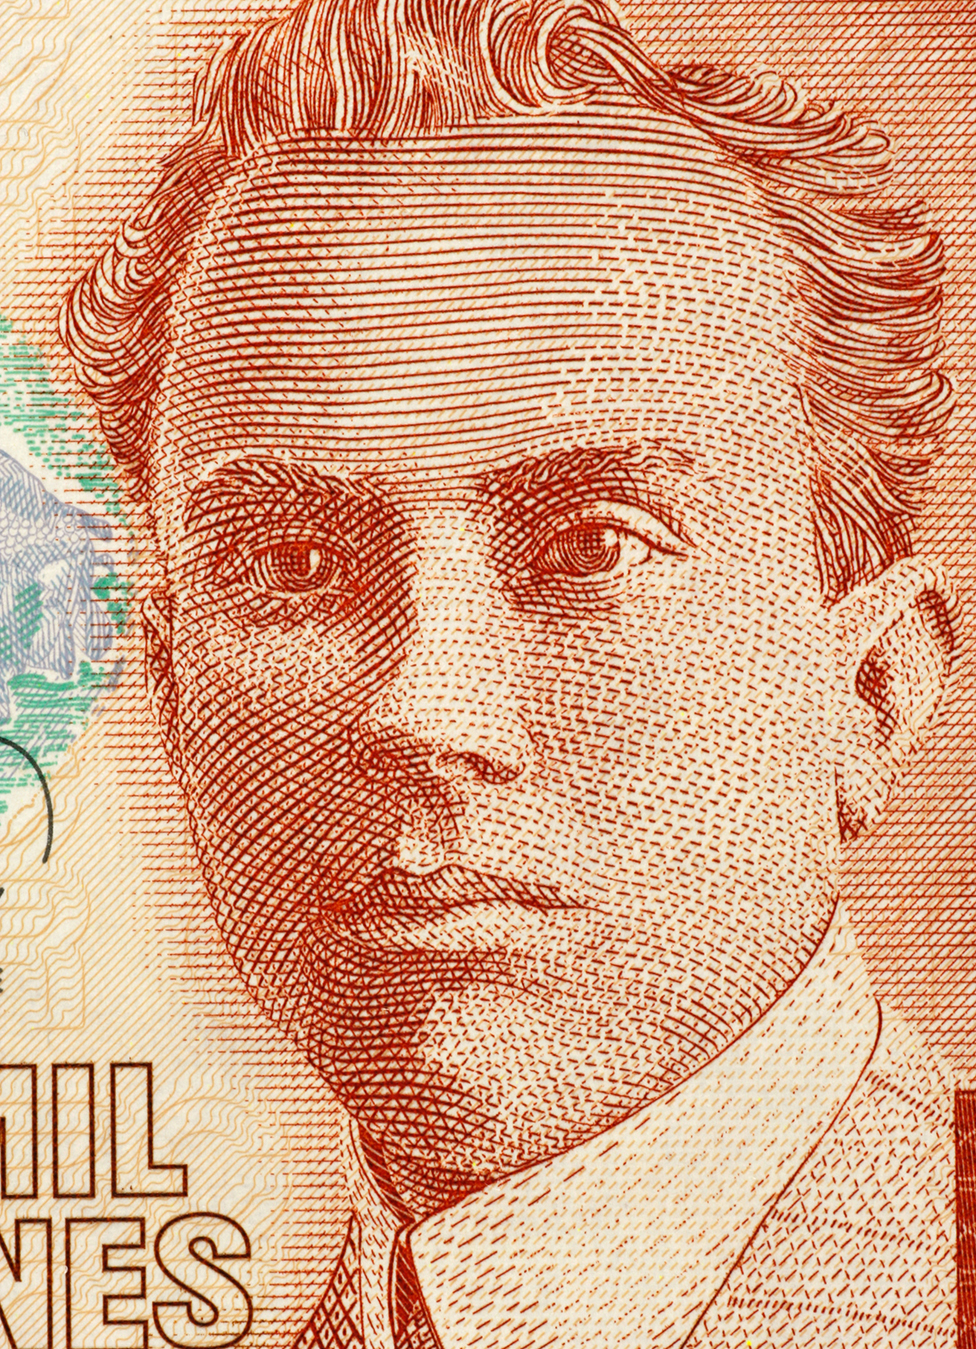 Efigie de Picado Twight en un billete de 2000 colones